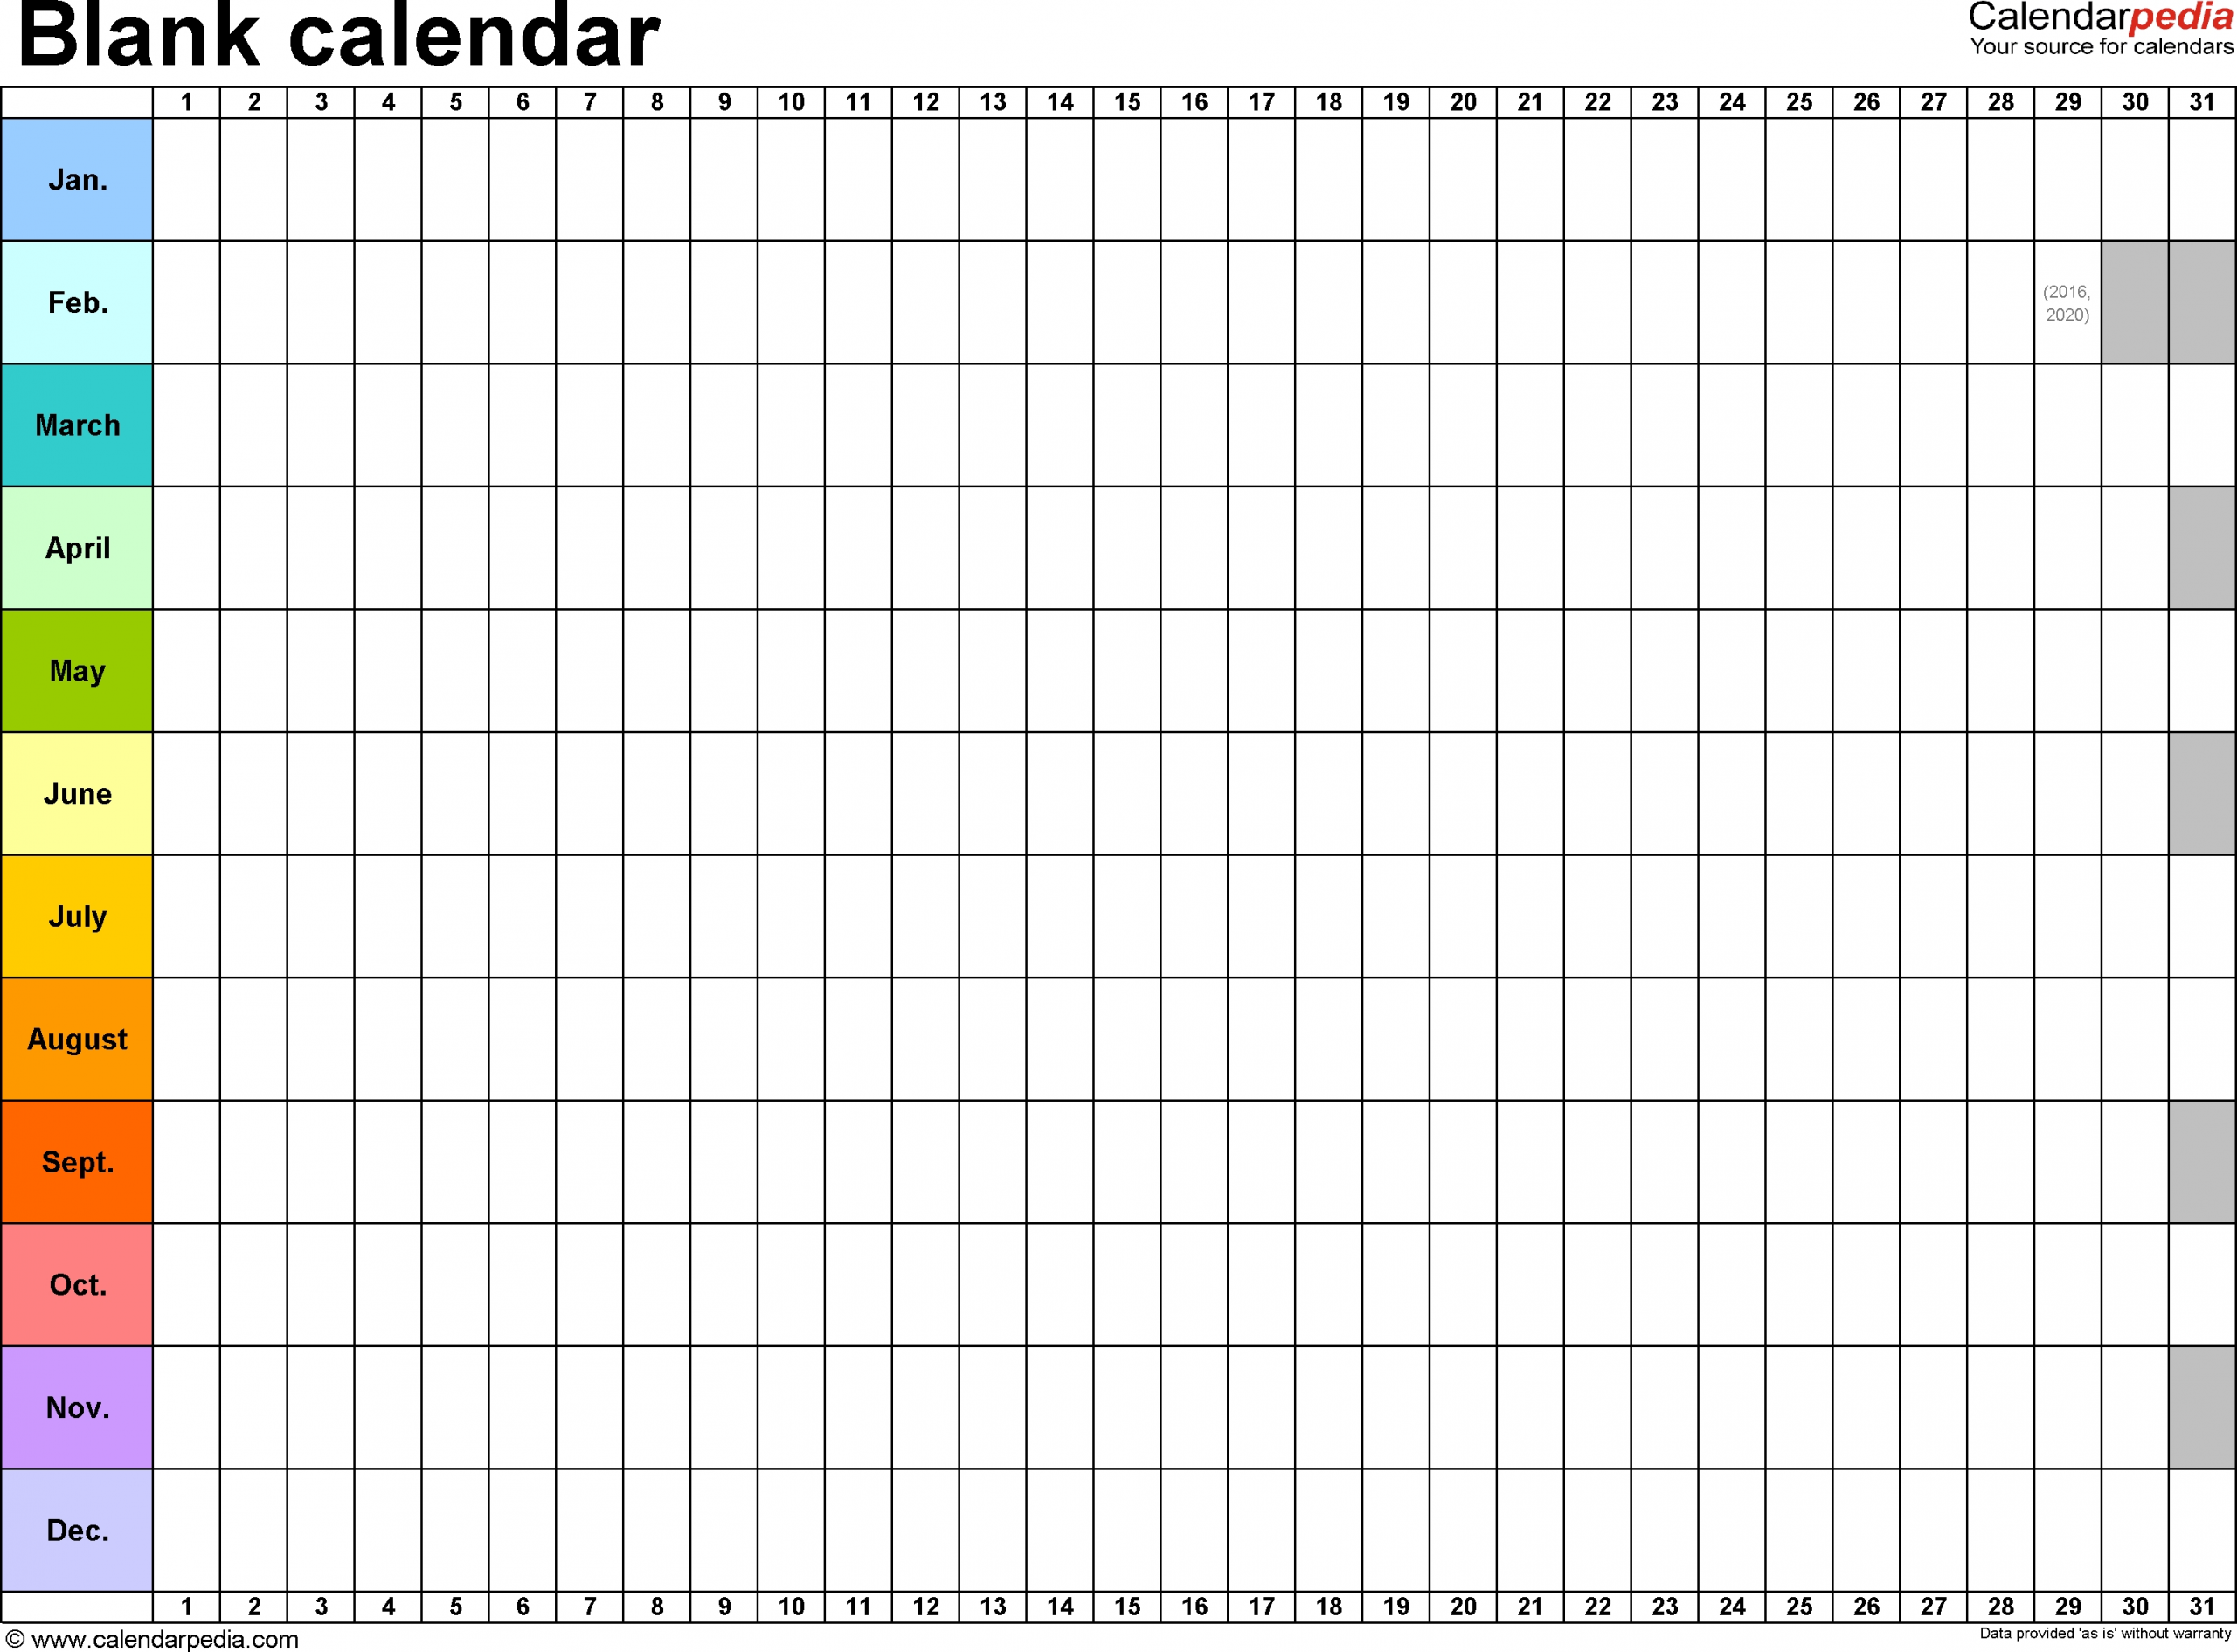 Get Blank Full Year Calendar